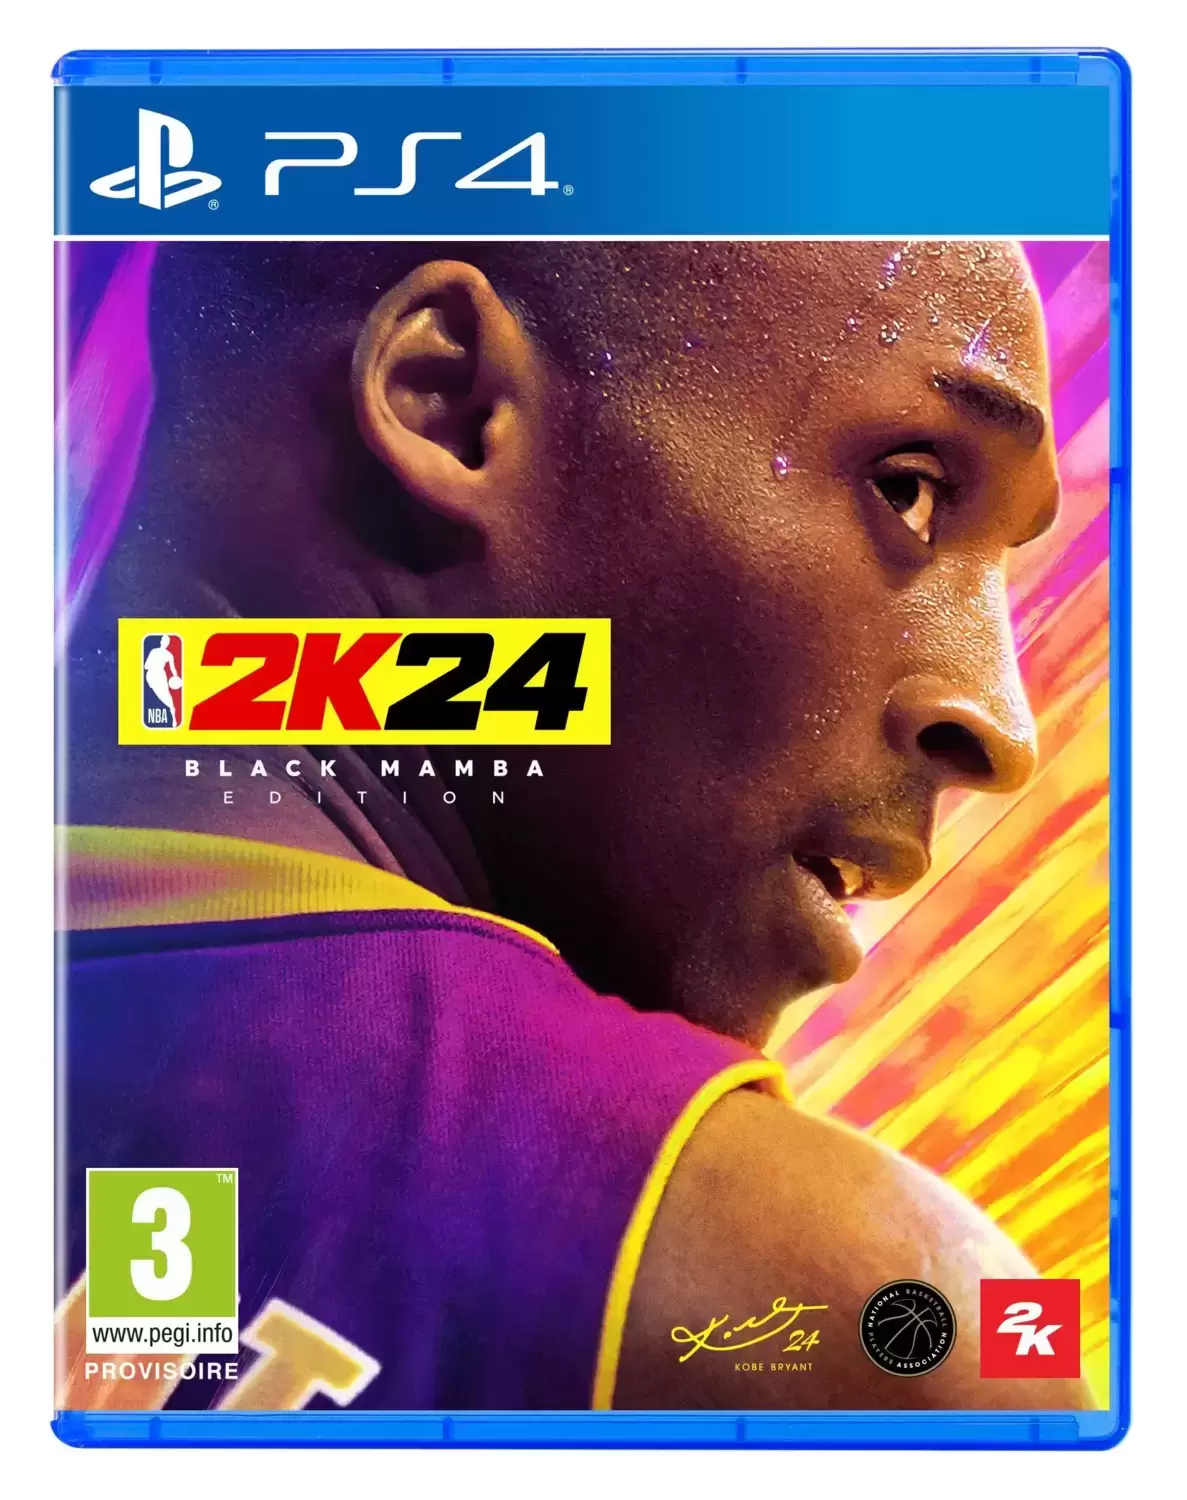 PS4 Games - NBA 2K24 - Black Mamba Edition